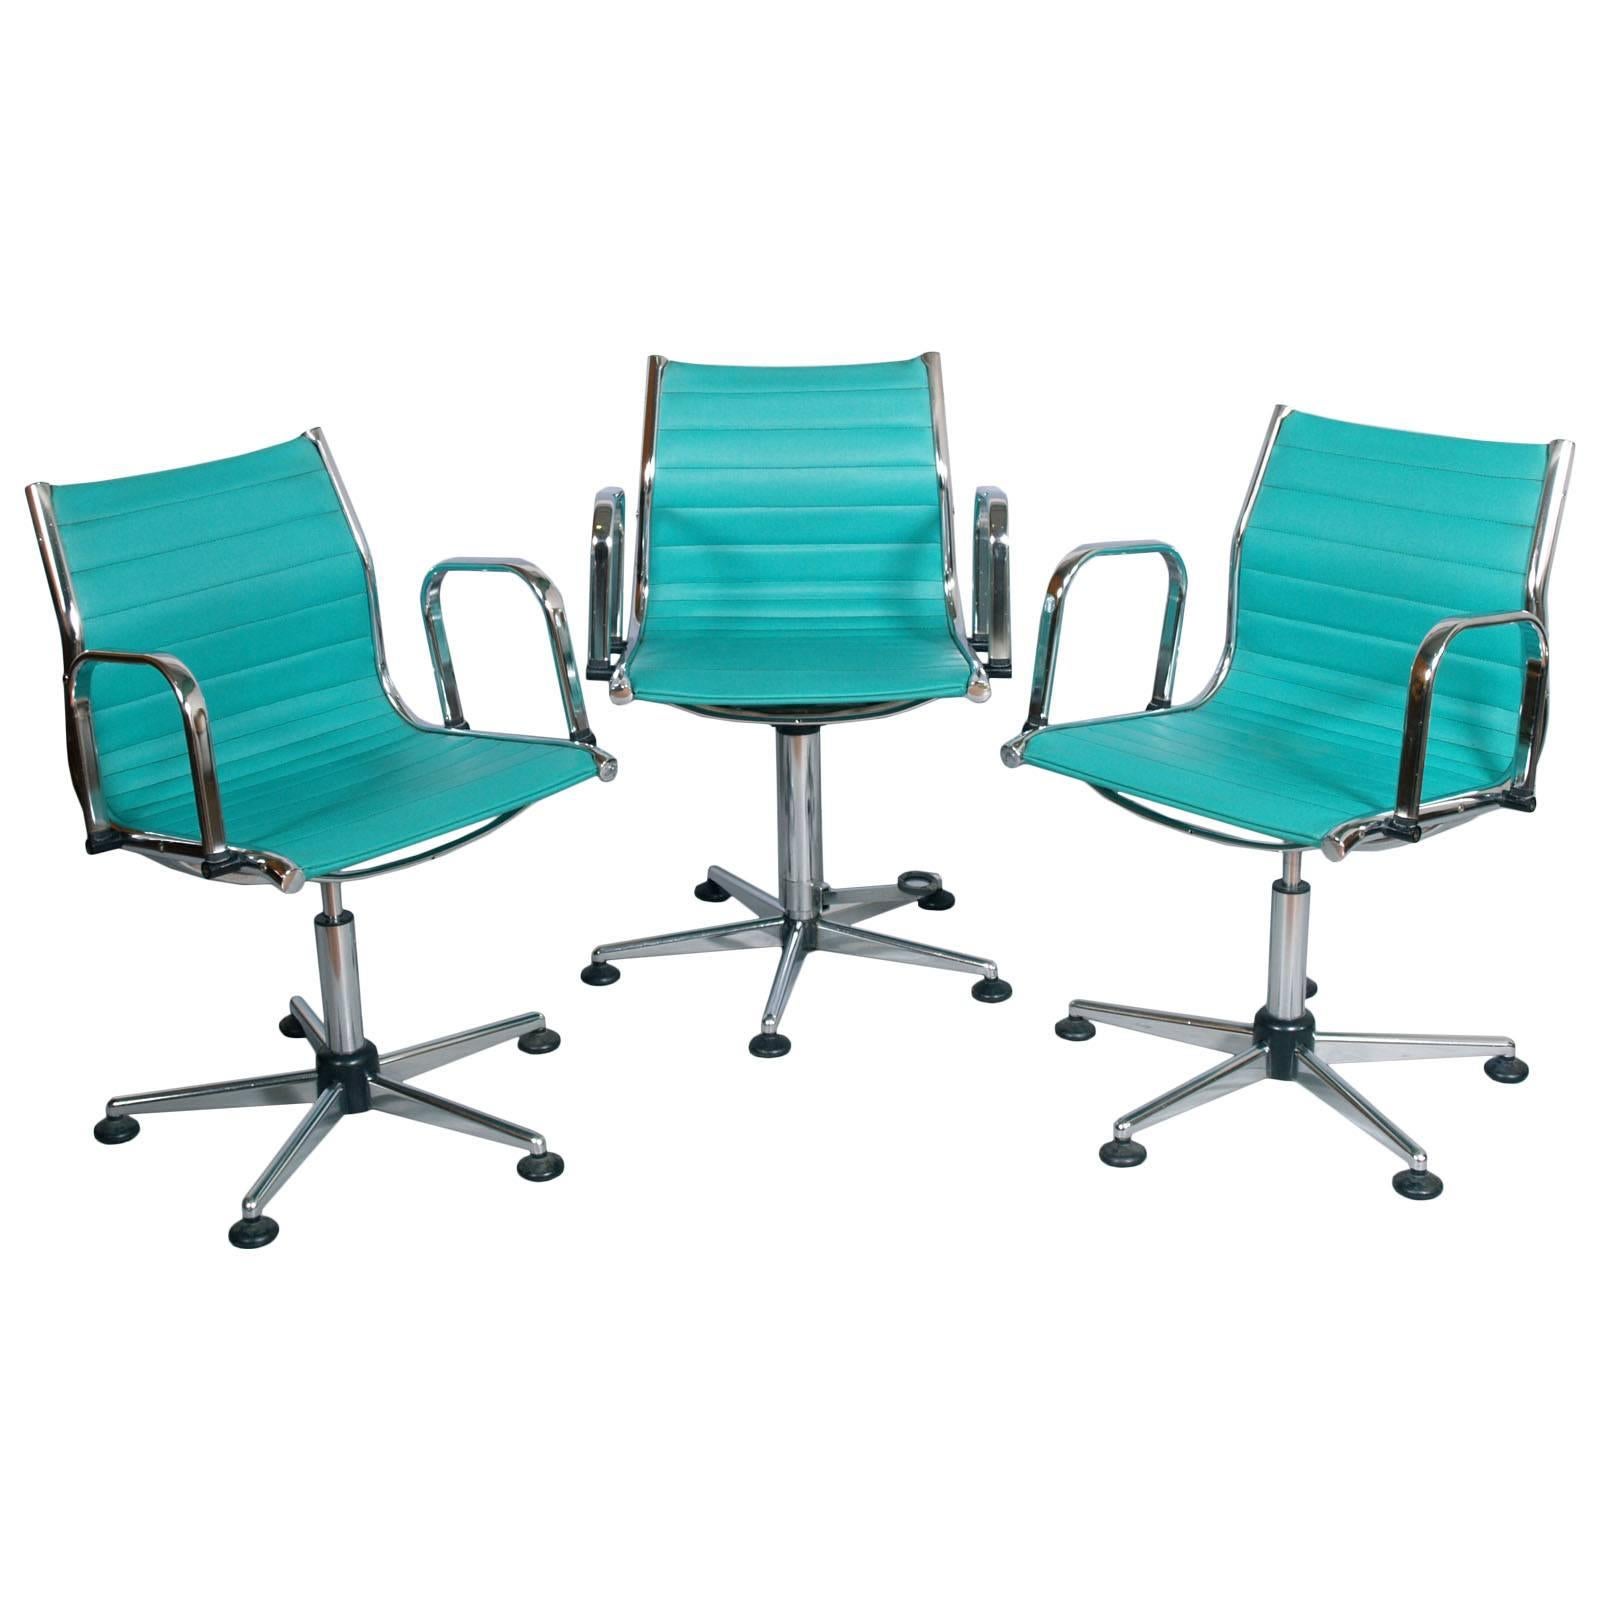 Ensemble de chaises de bureau des années 1960, acier chromé, tapissées de similicuir, hauteur réglable